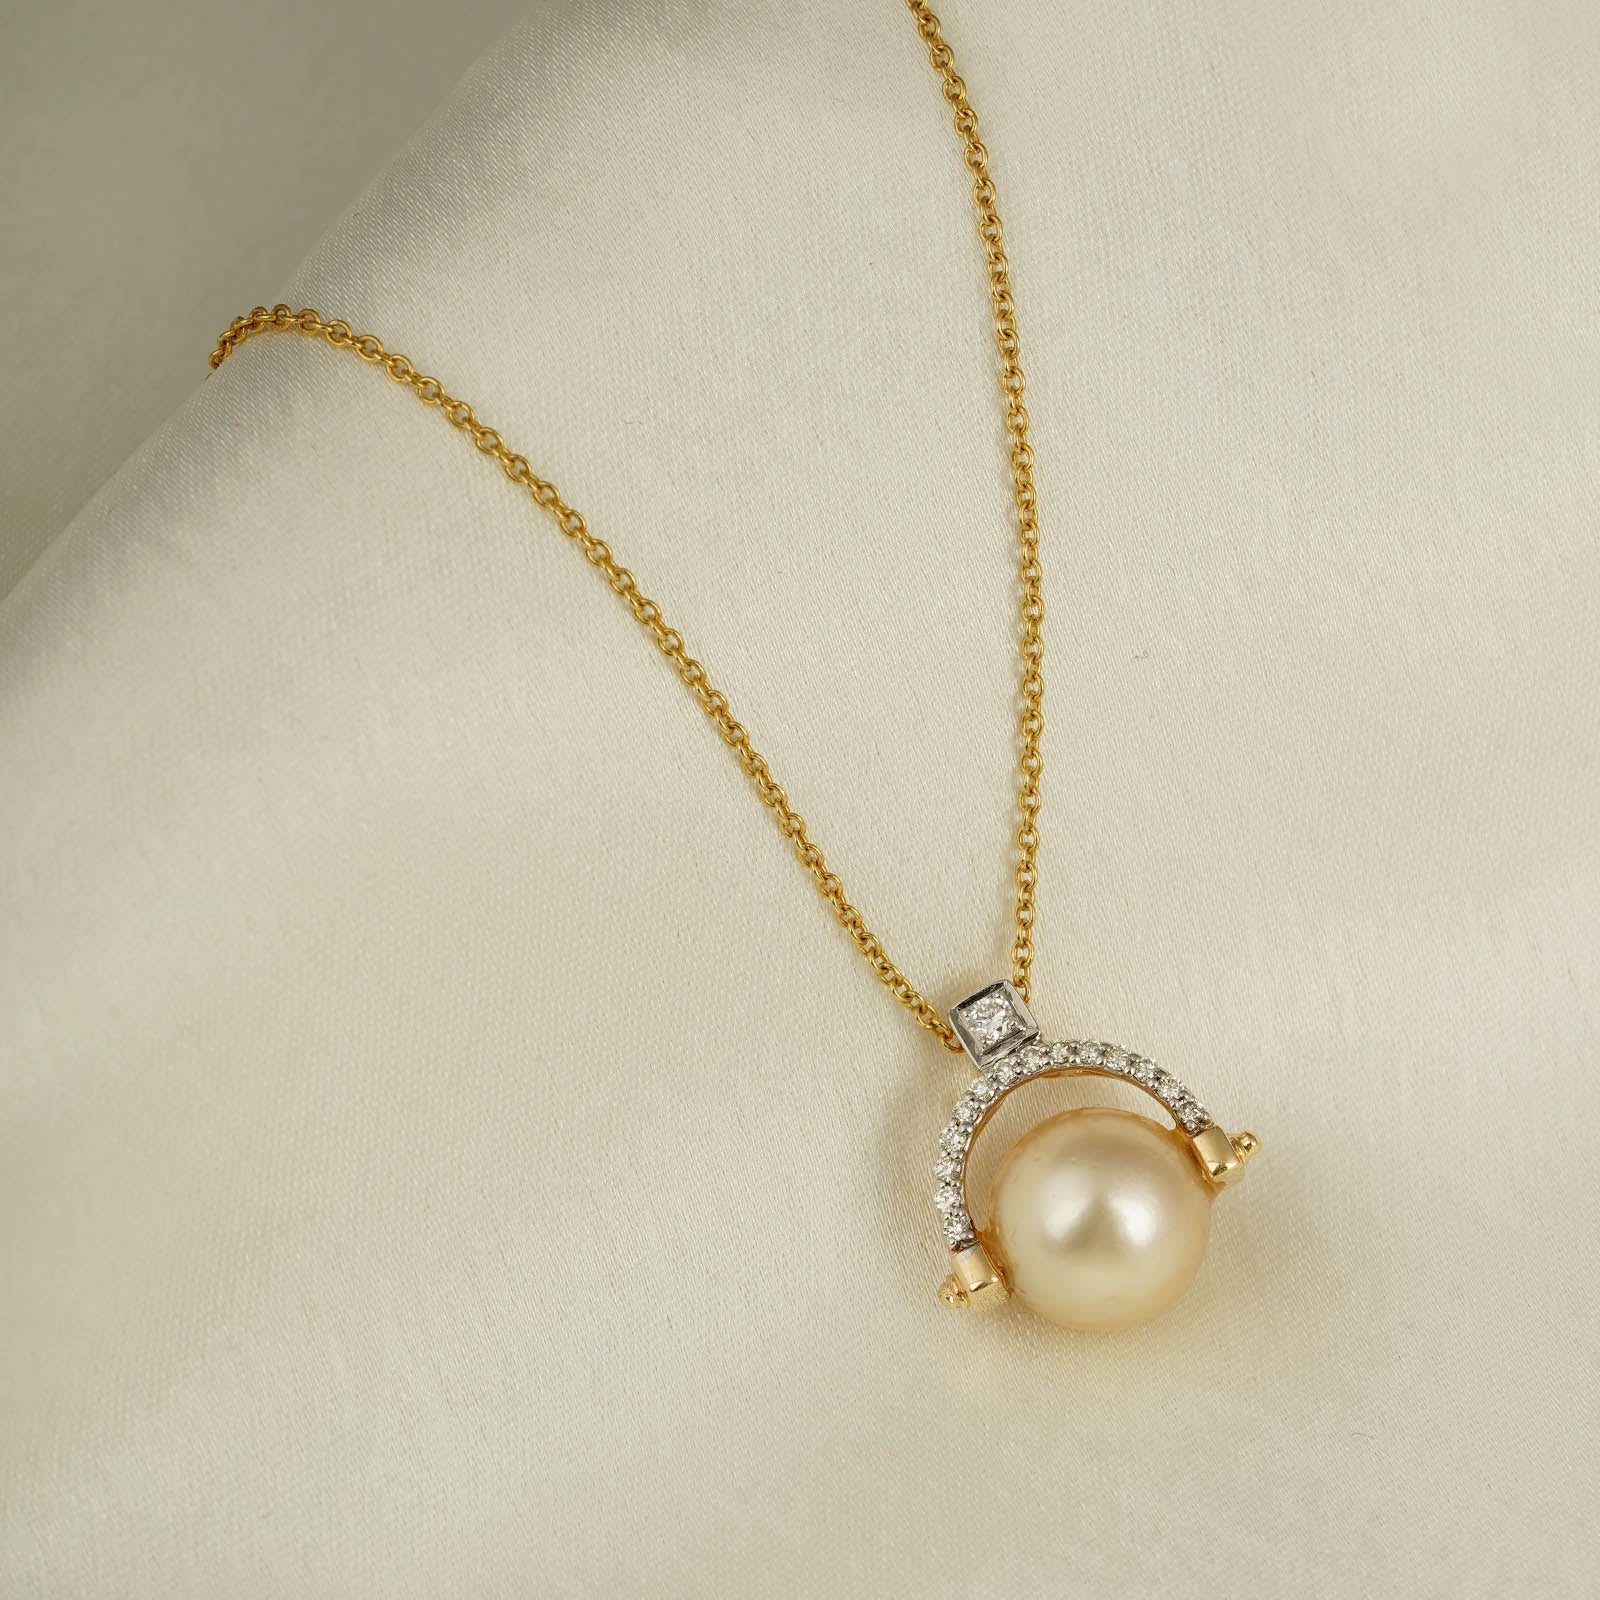 Grace Kelly Pendant Necklace